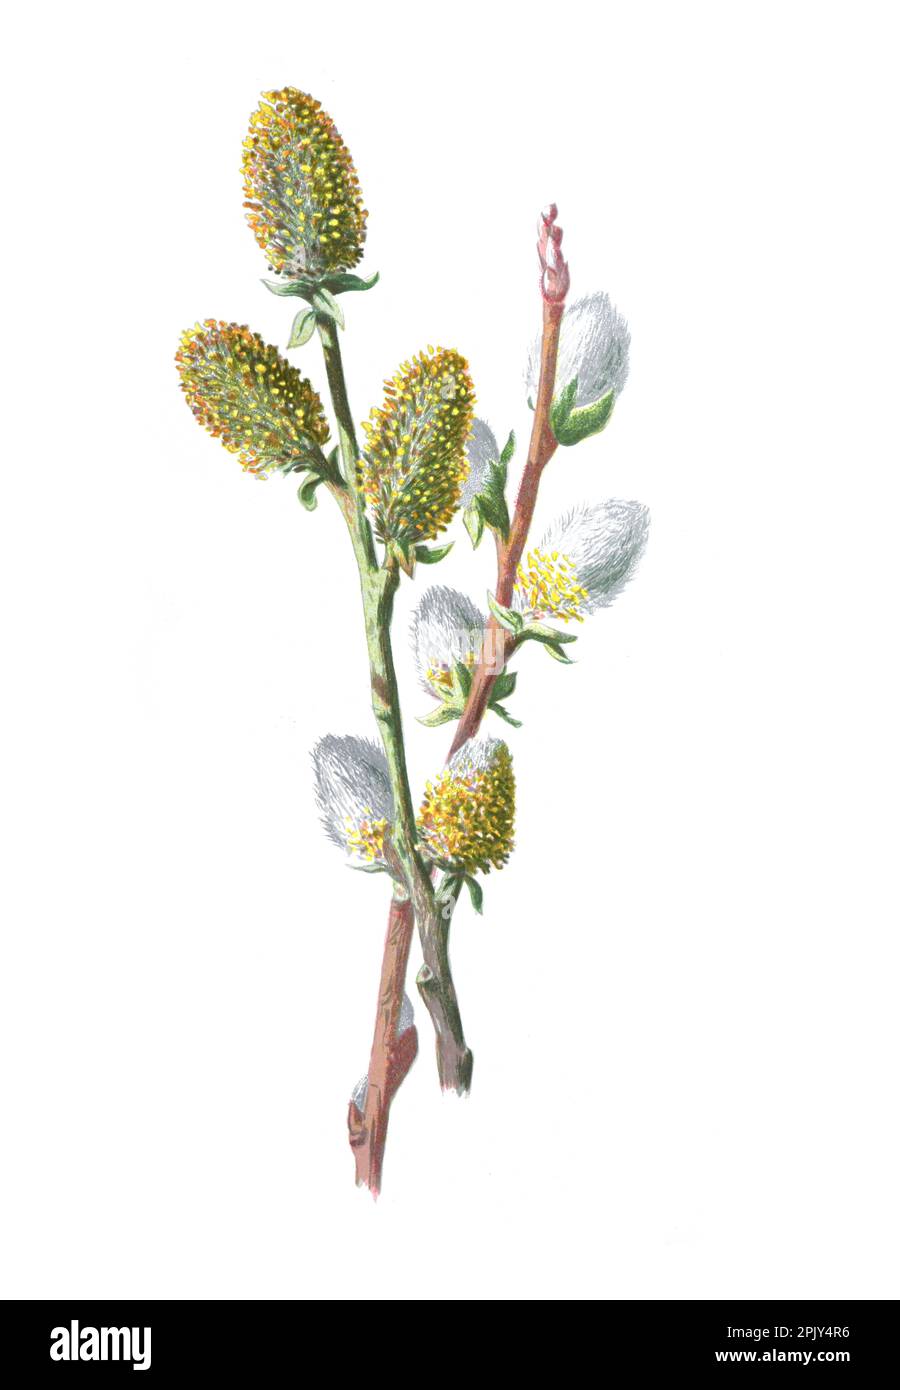 Weiden, auch Sallows und Eierweiden genannt, aus der Gattung Salix. Antike handgezeichnete Pflanzenillustration. Vintage handgezeichnete Weidenillustration. Stockfoto